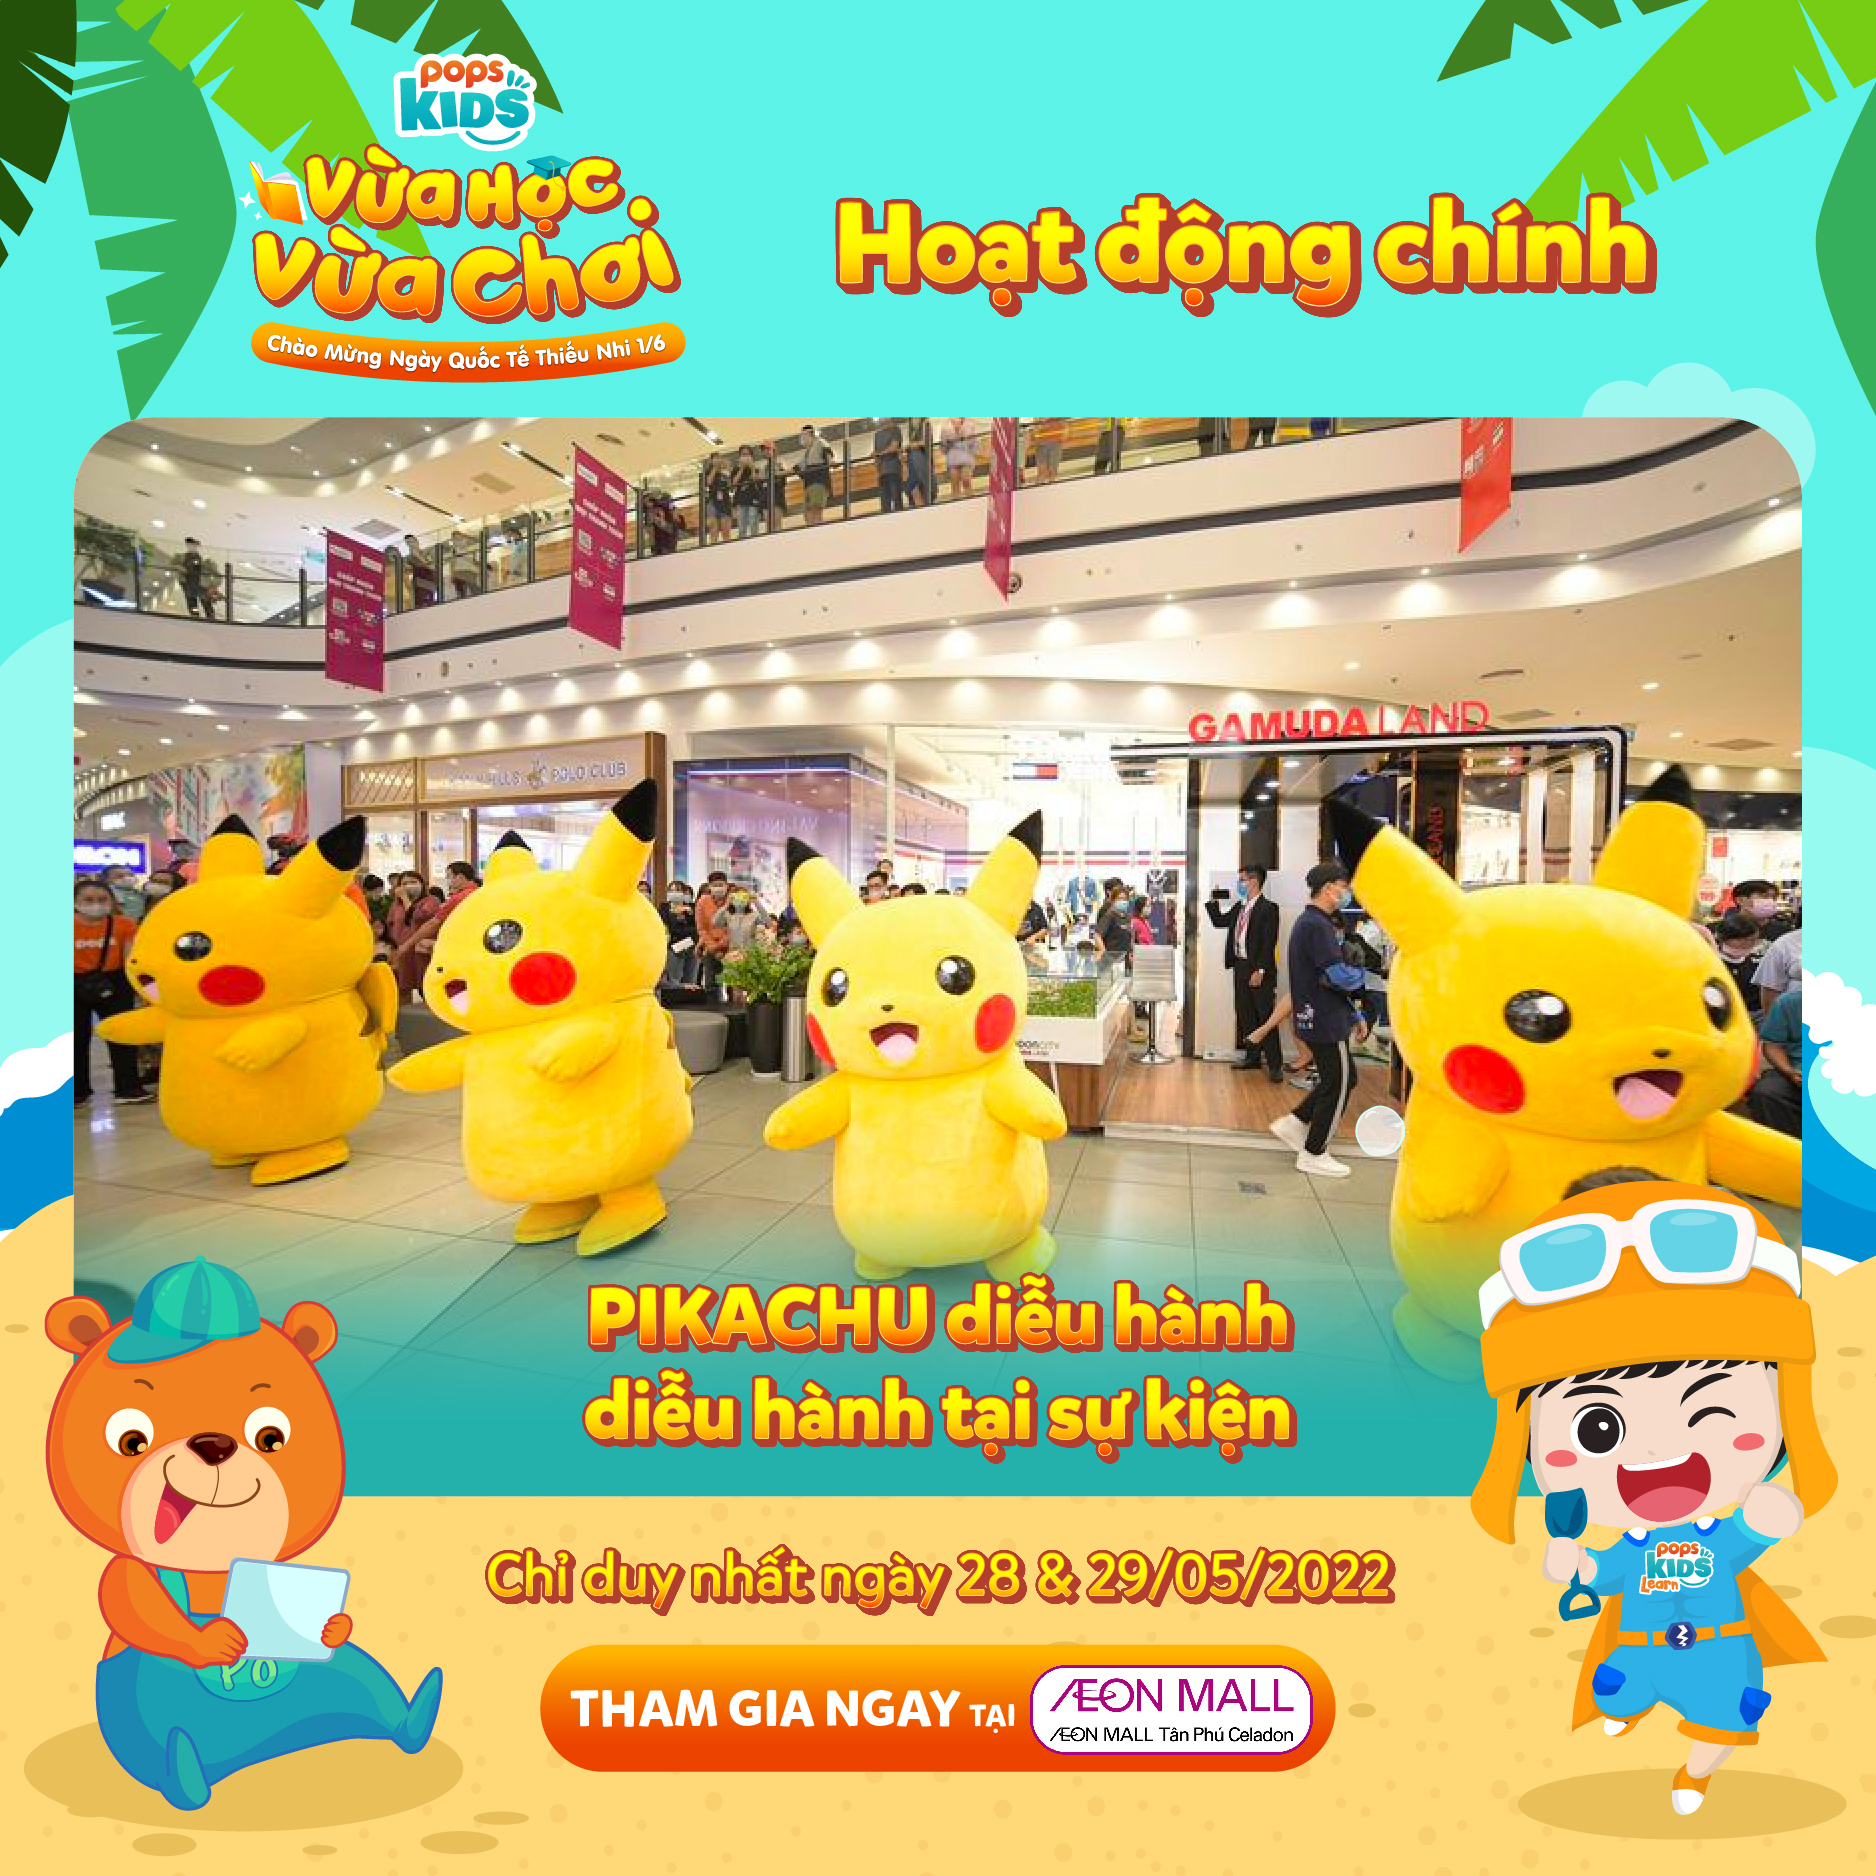 POPS Kids trở lại, dẫn “đội quân” Pikachu, Doraemon đến thăm các bé vào Quốc tế Thiếu nhi